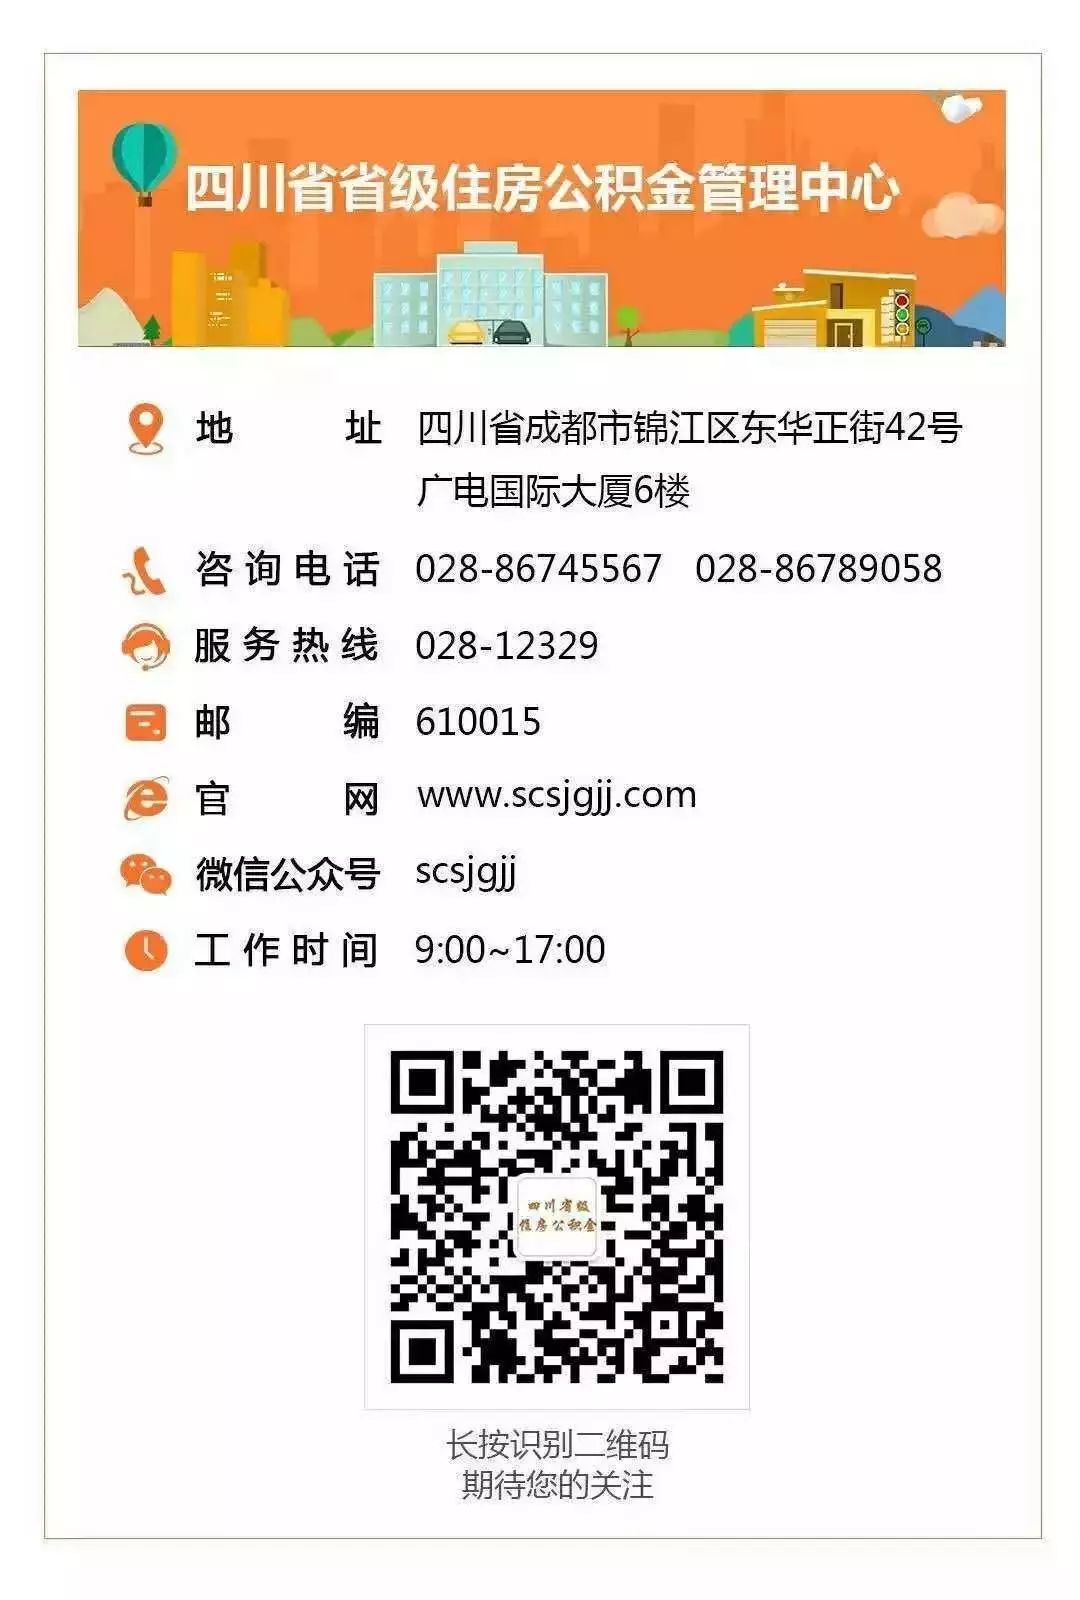 四川省省级住房公积金管理中心 公积金贷款进度查询指南